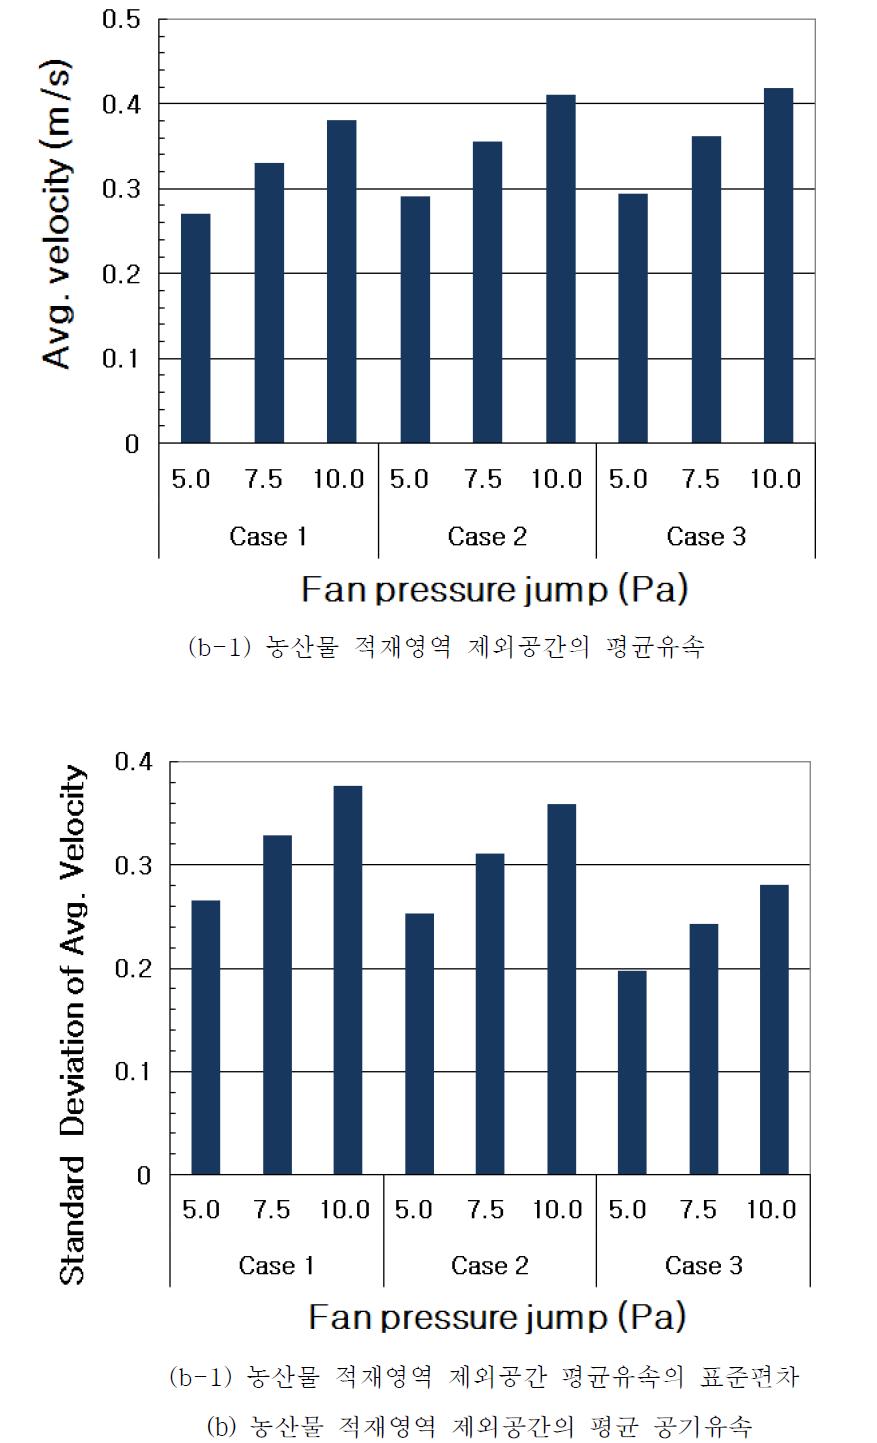 1-MCP 처리장치별, 팬정압별 내부 평균 공기유속